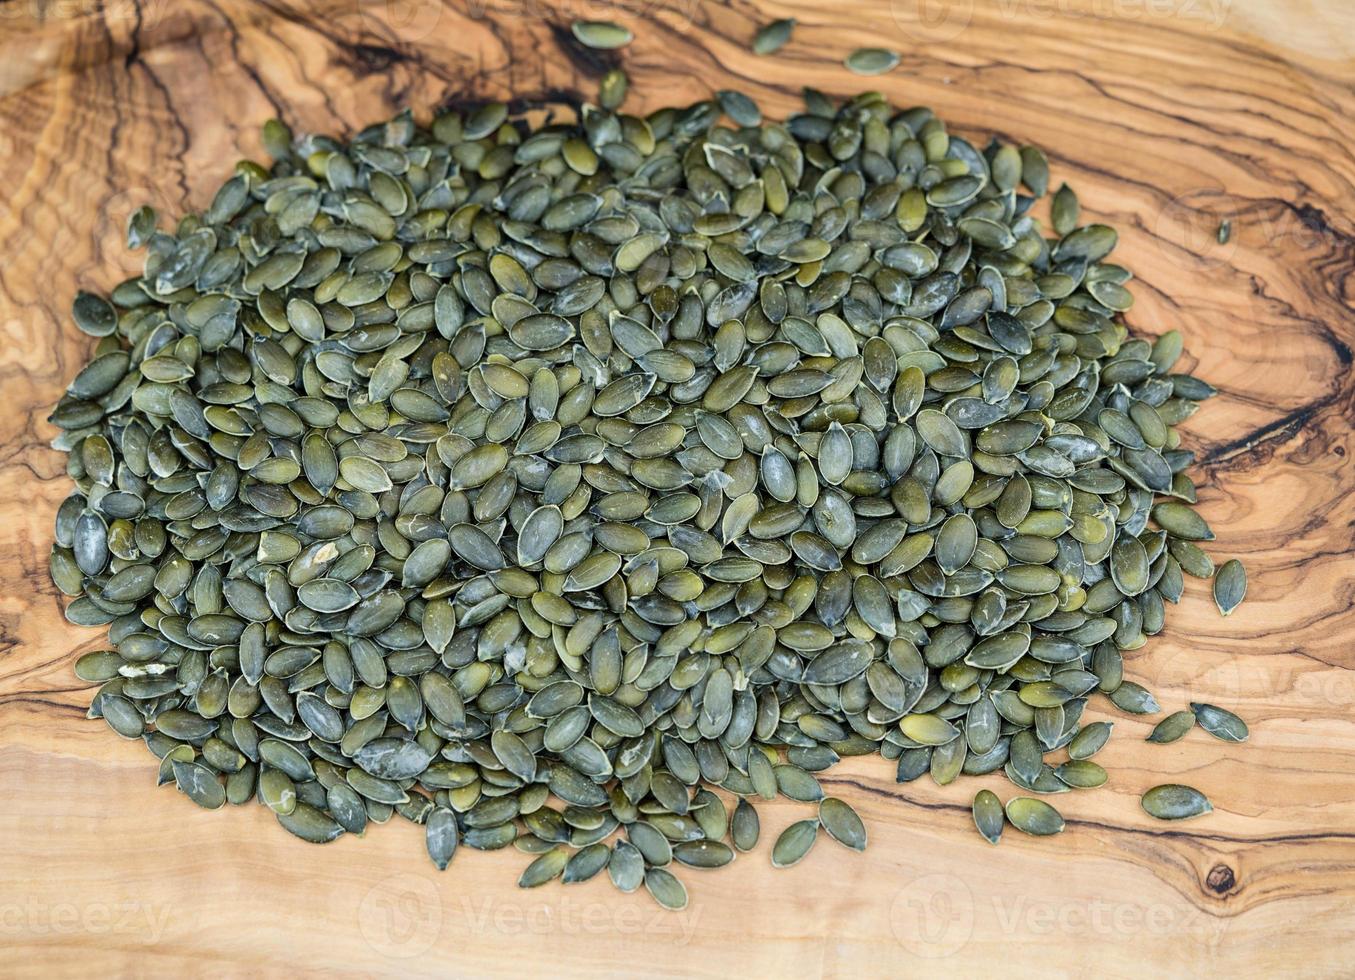 sementes de abóbora torradas na madeira de oliveira foto